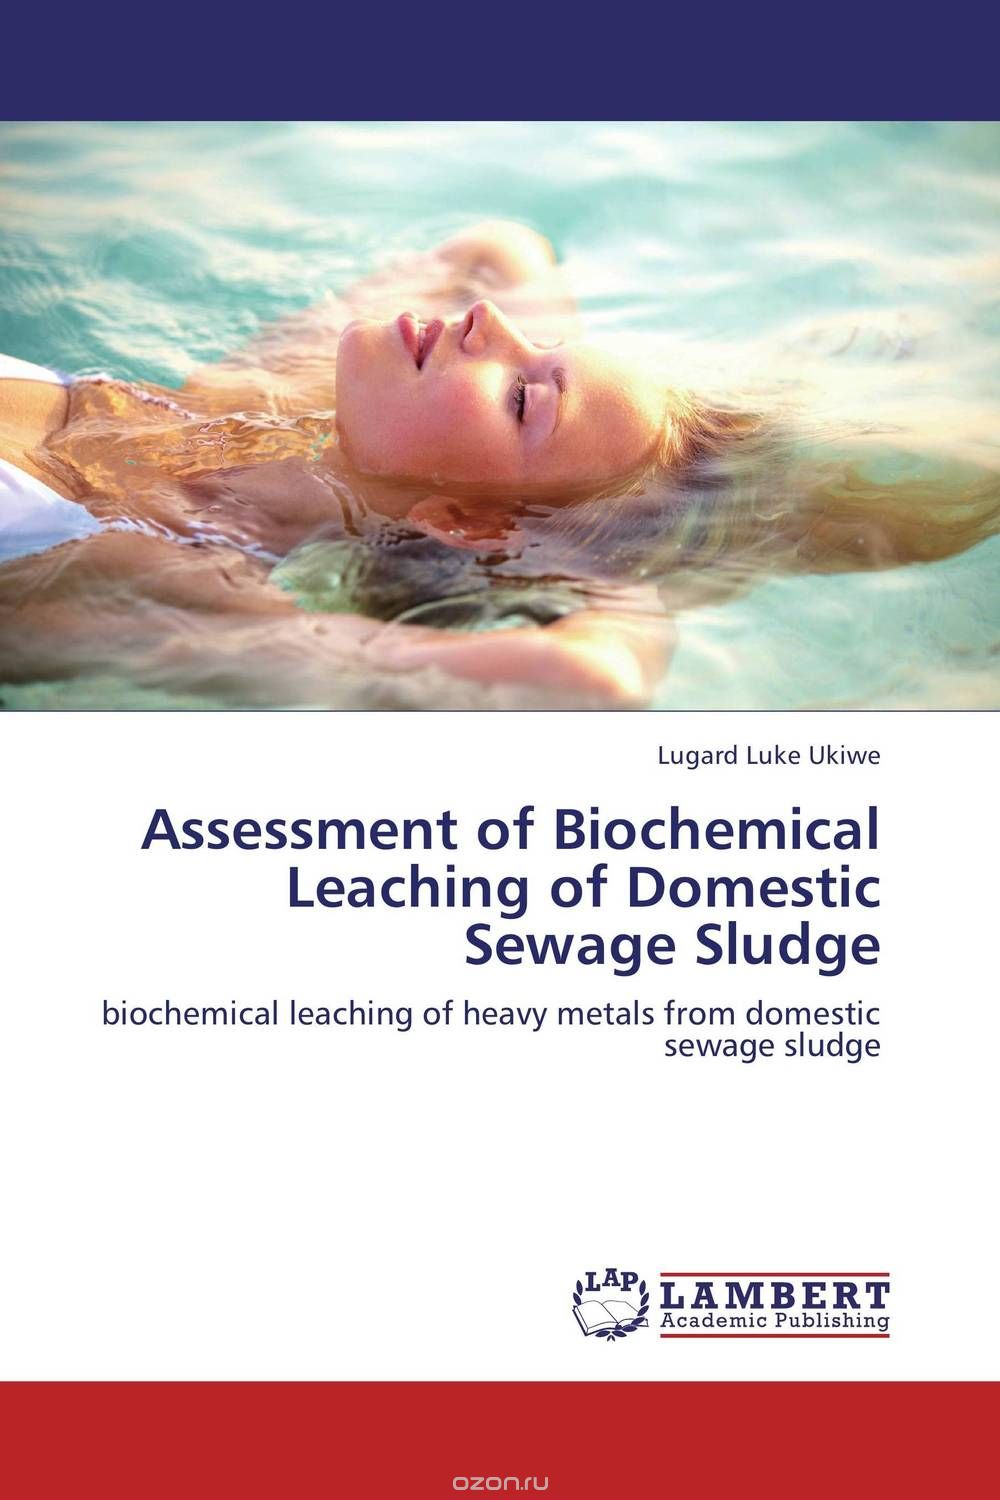 Скачать книгу "Assessment of Biochemical Leaching of Domestic Sewage Sludge"